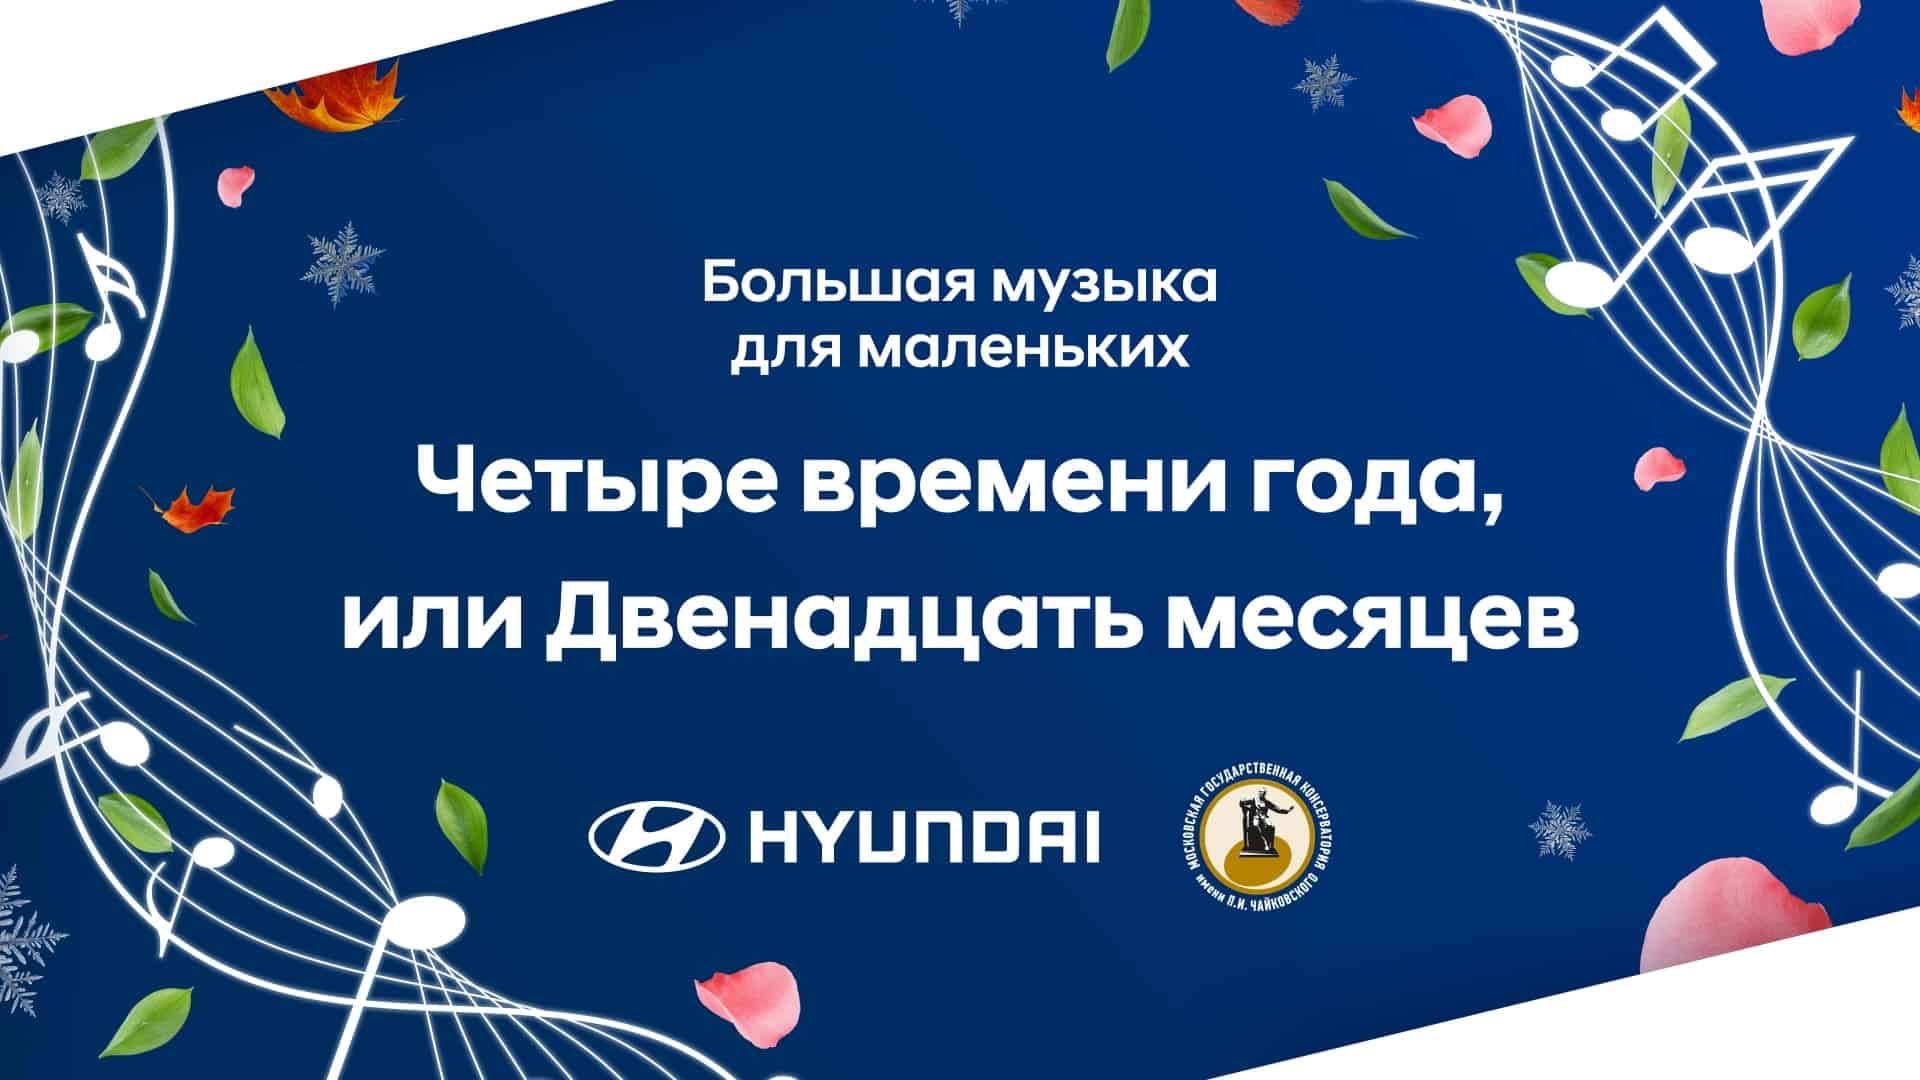 Hyundai и Московская консерватория открывают шестой сезон программы «Большая музыка для маленьких»